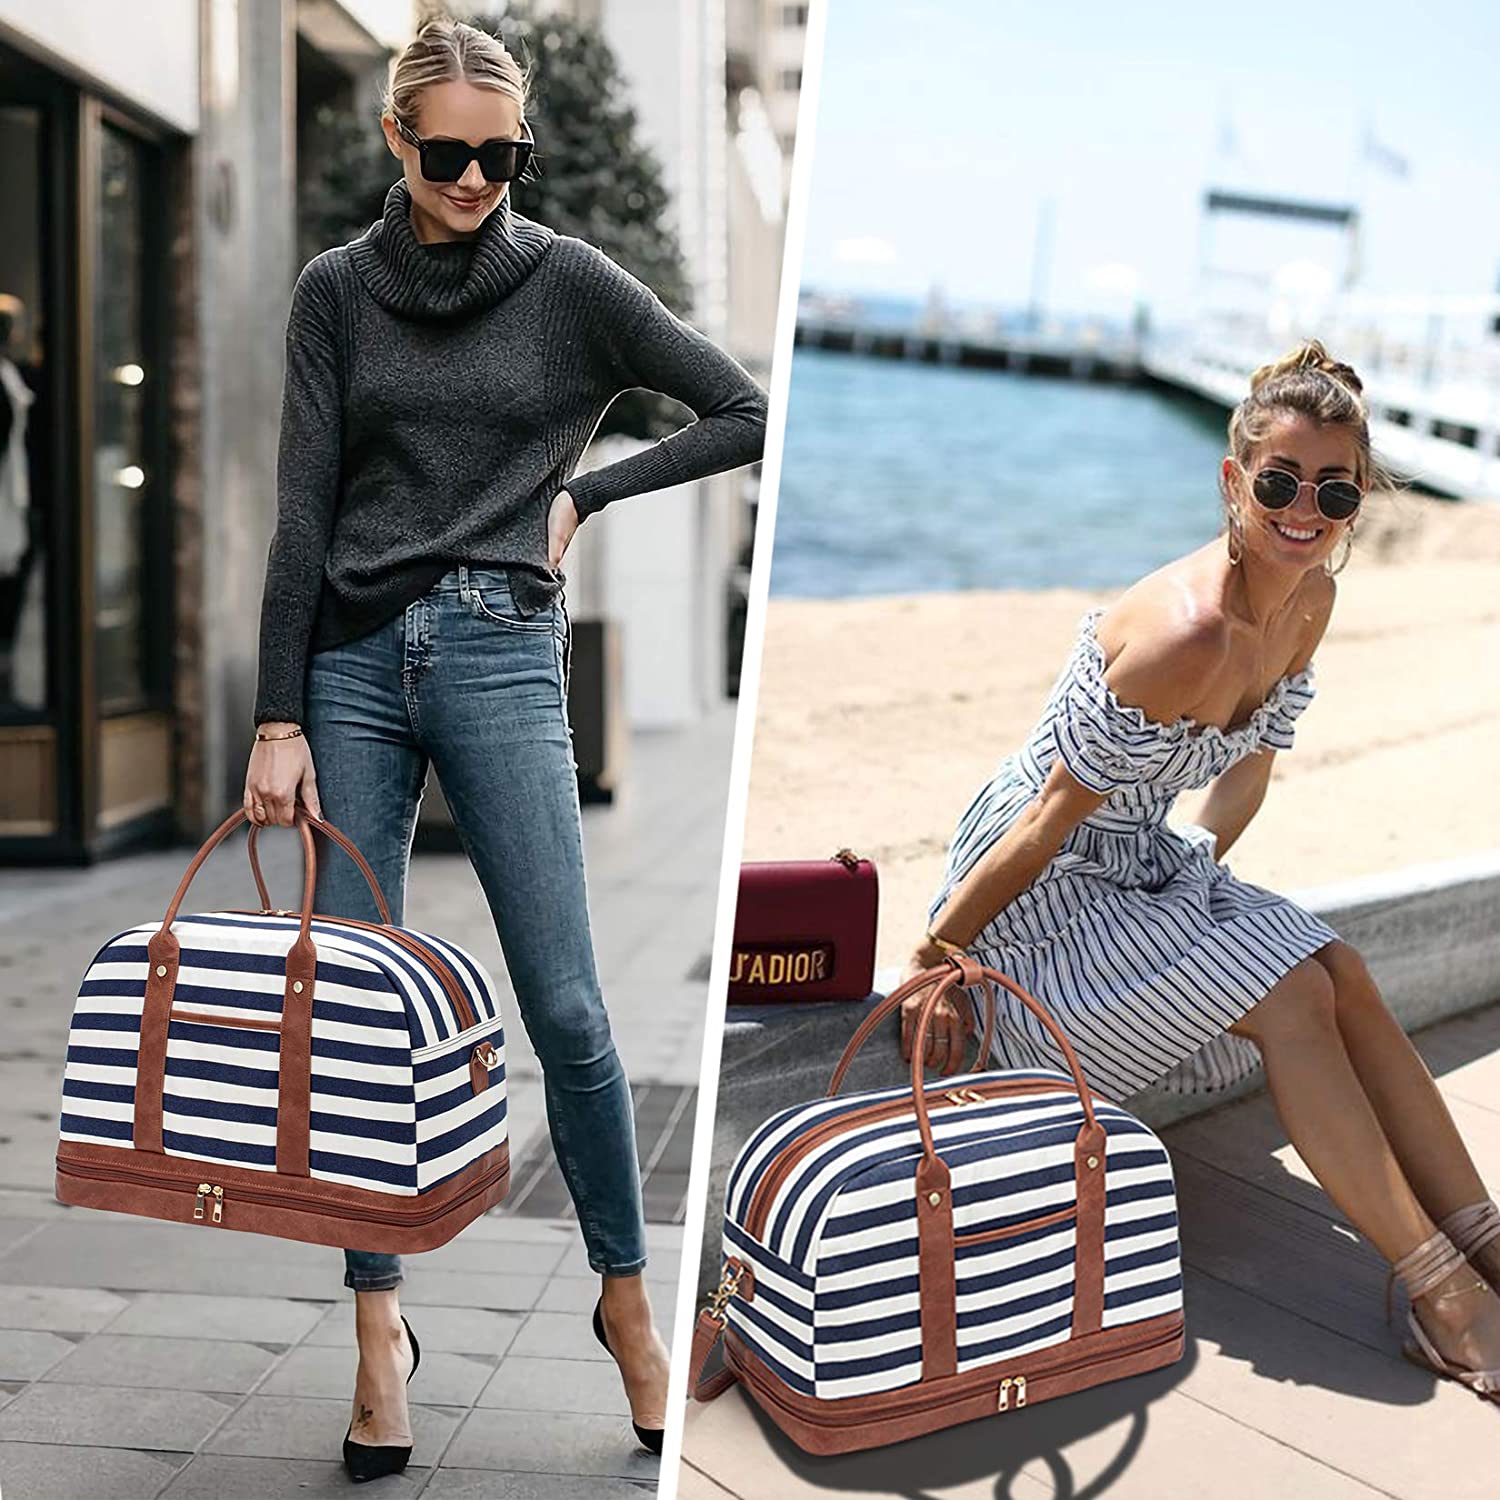 Travel Bag for Women Weekender Bag Women Duffle Bag Women & 